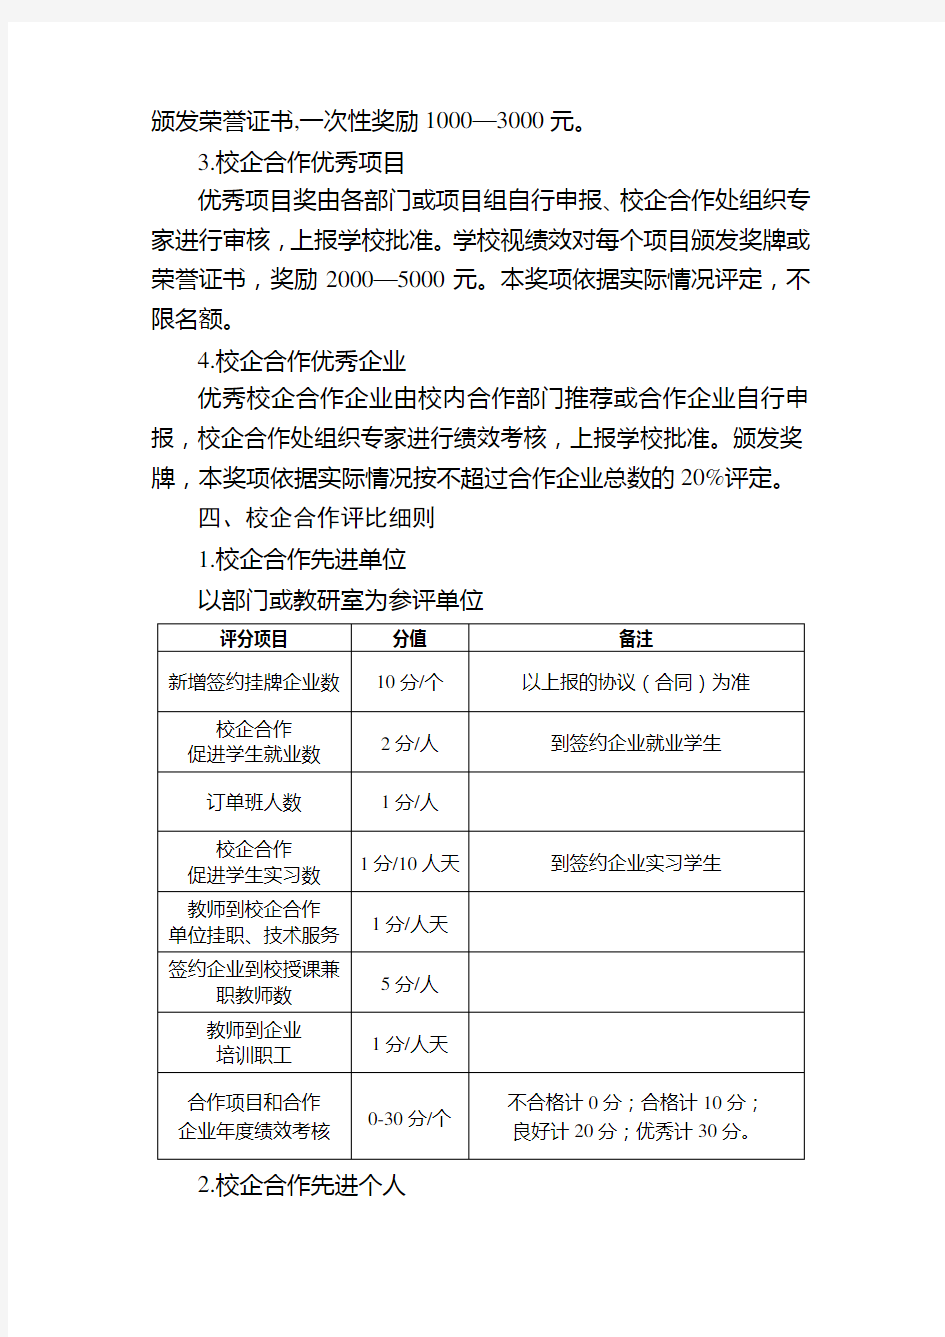 武汉软件工程职业学院校企合作奖励办法